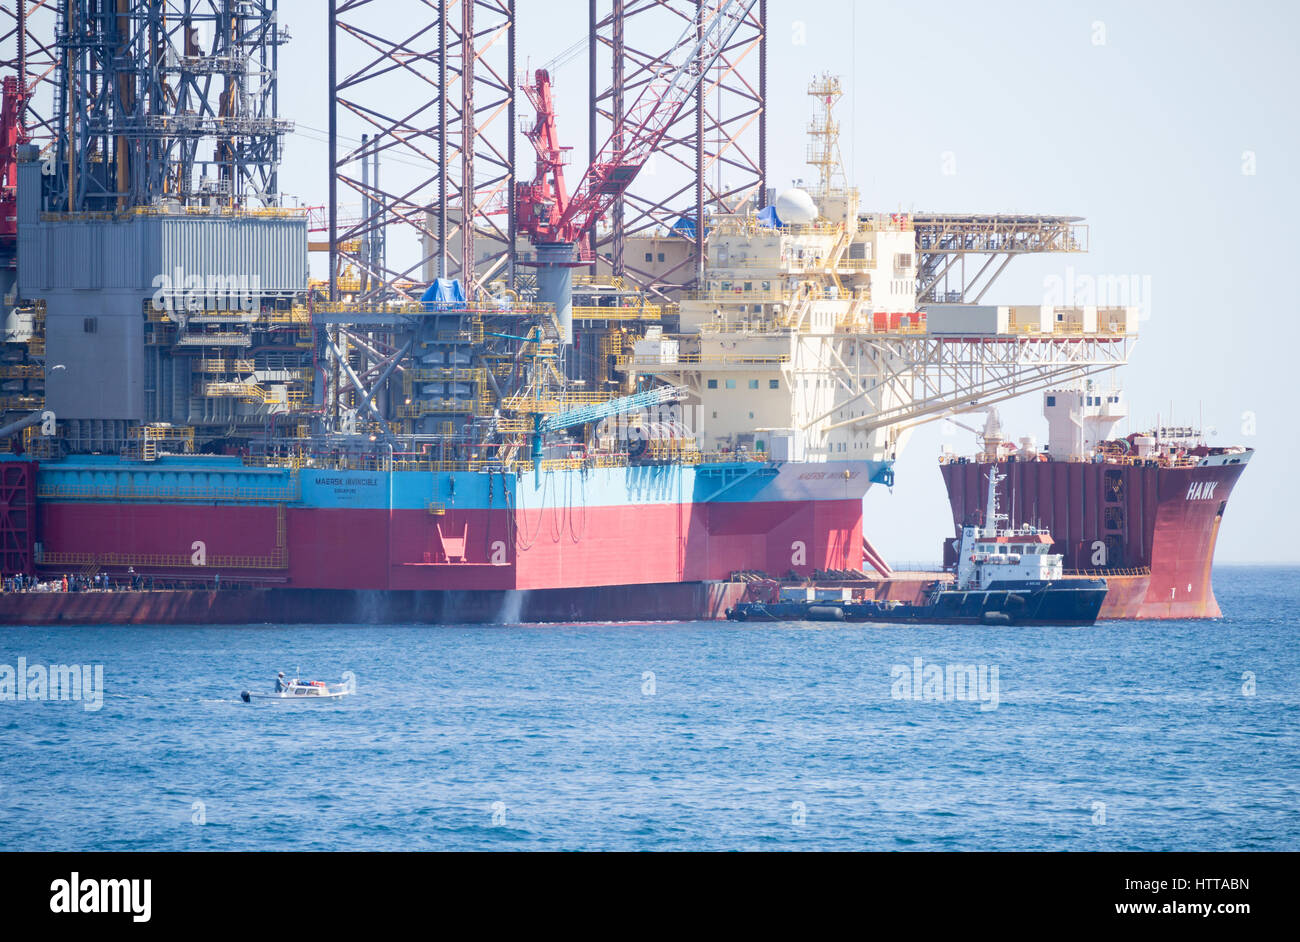 Schiff für den Transport schwerer Lasten in der Offshore-Industrie, die Transport von einem Aufbocken Bohranlage aus Südkorea, Norwegen entworfen. Stockfoto